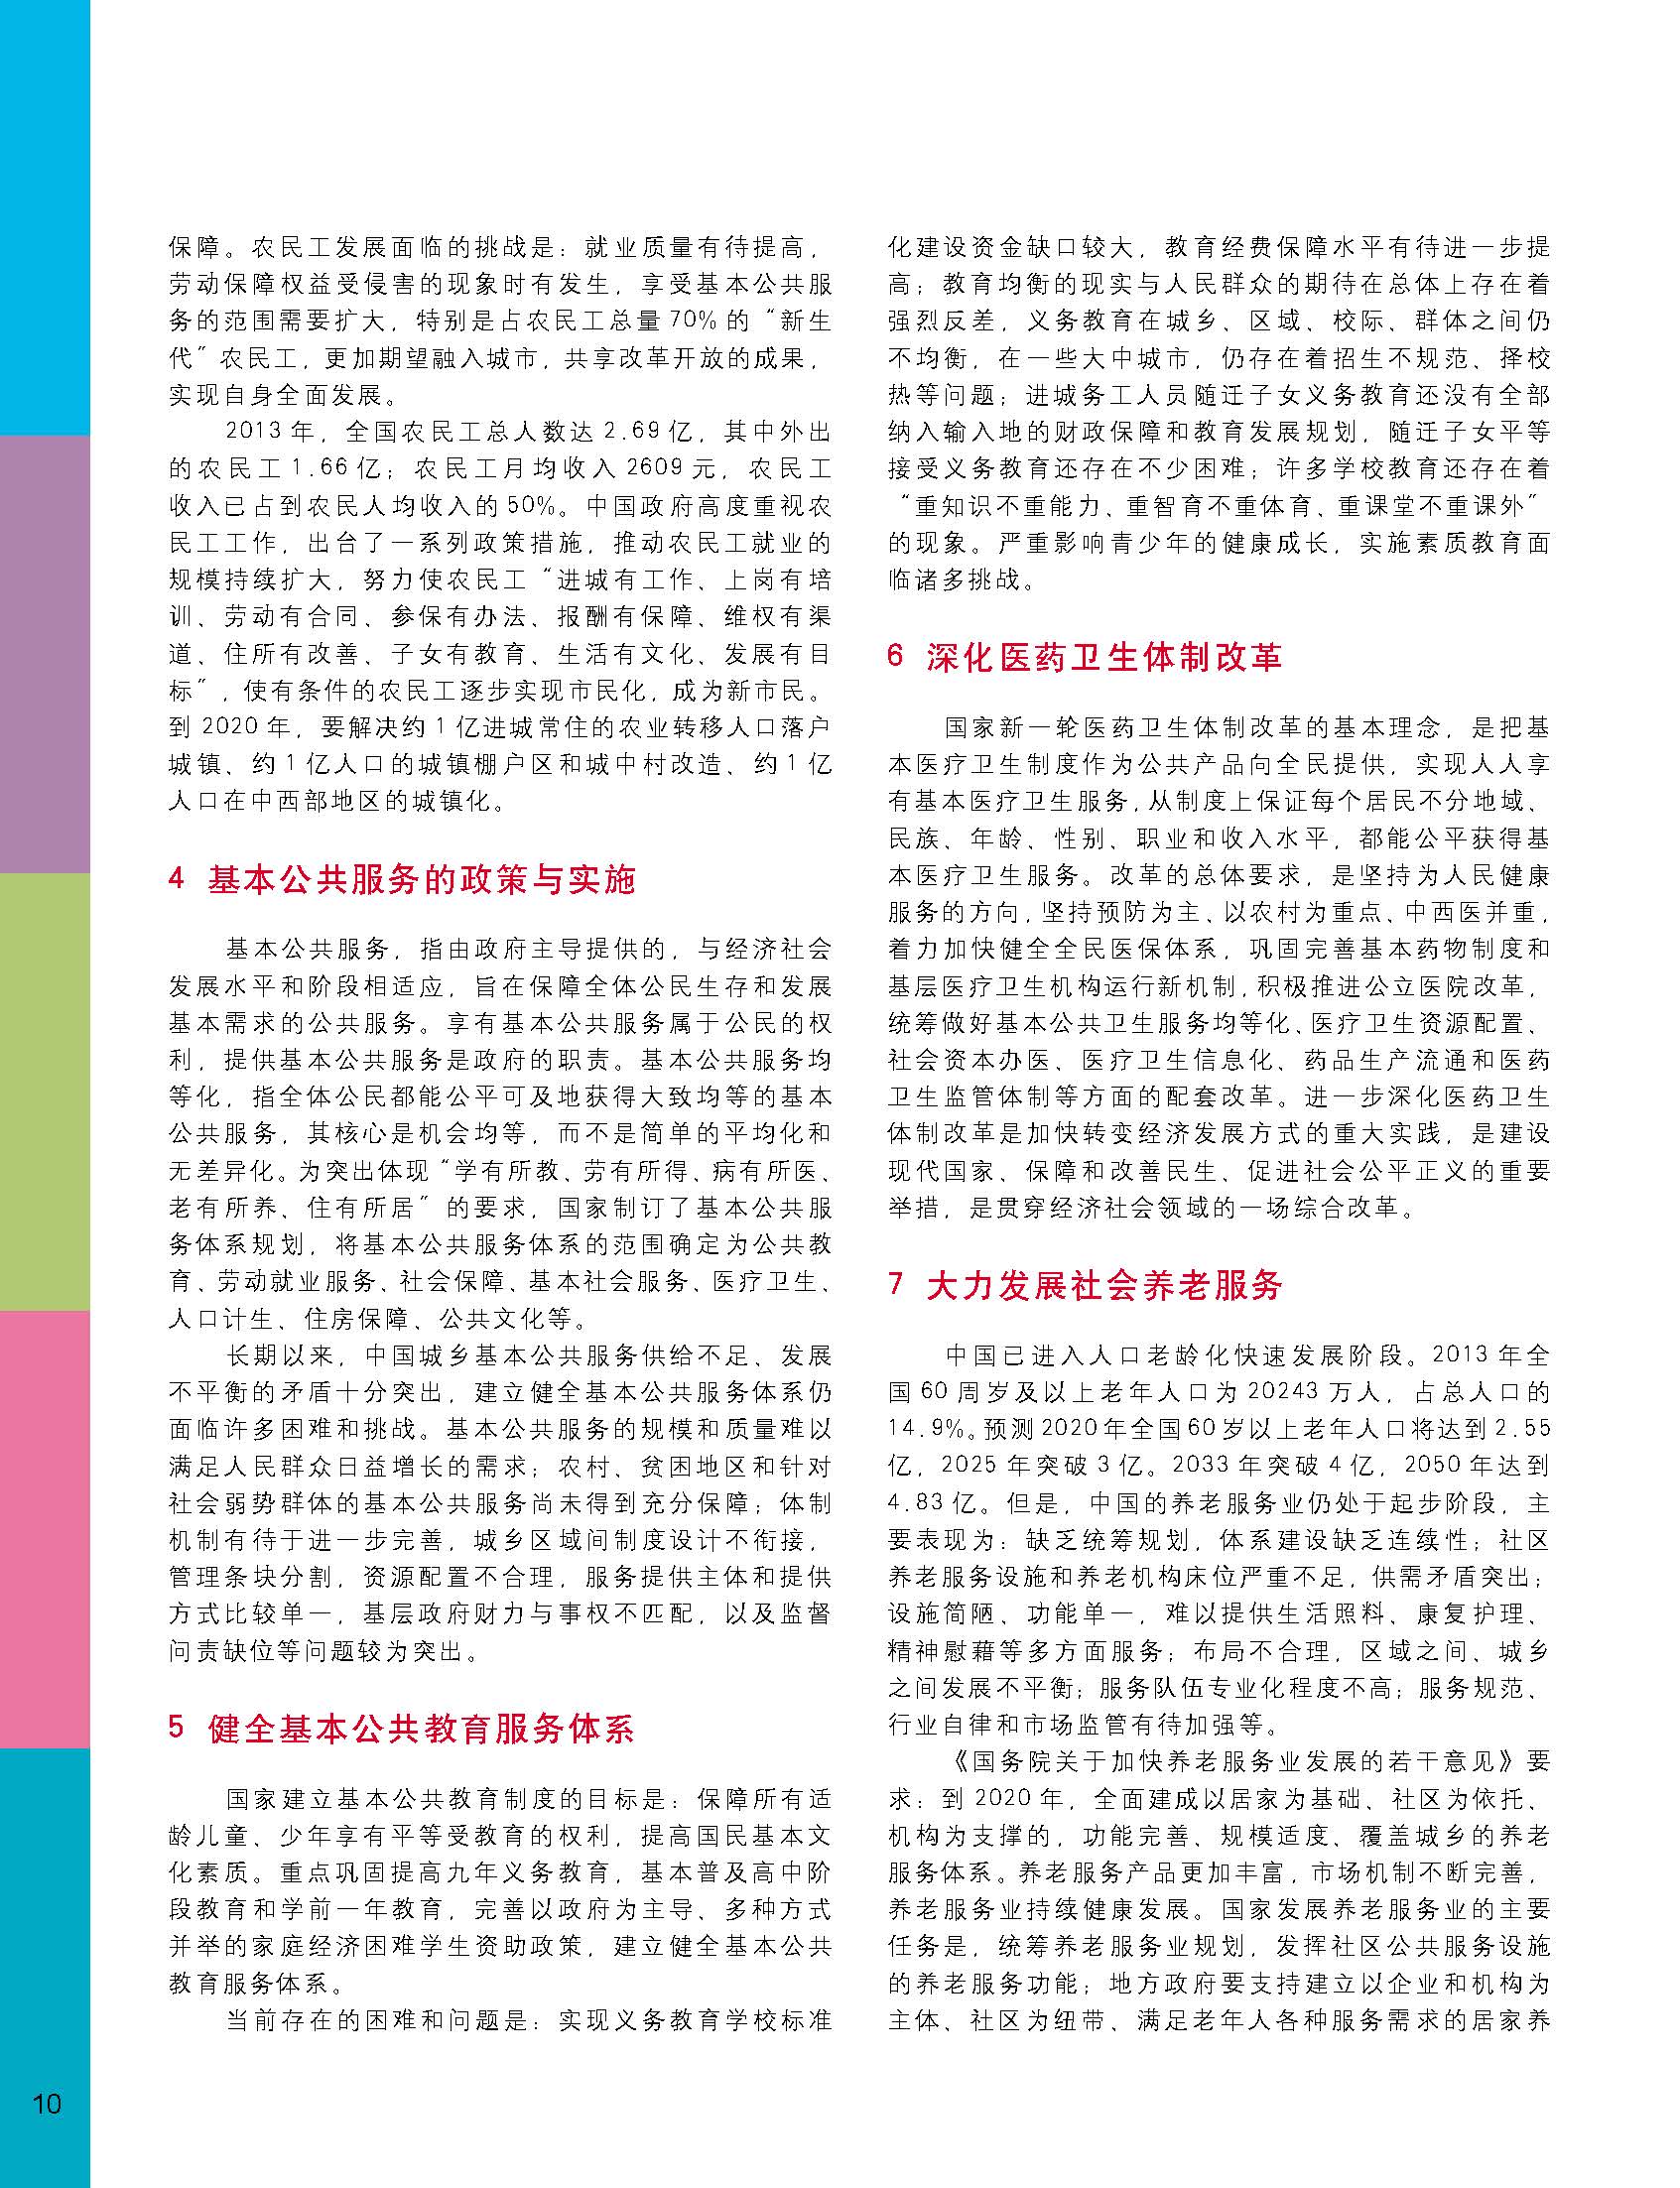 状况报告2014-2015中文 11.jpg